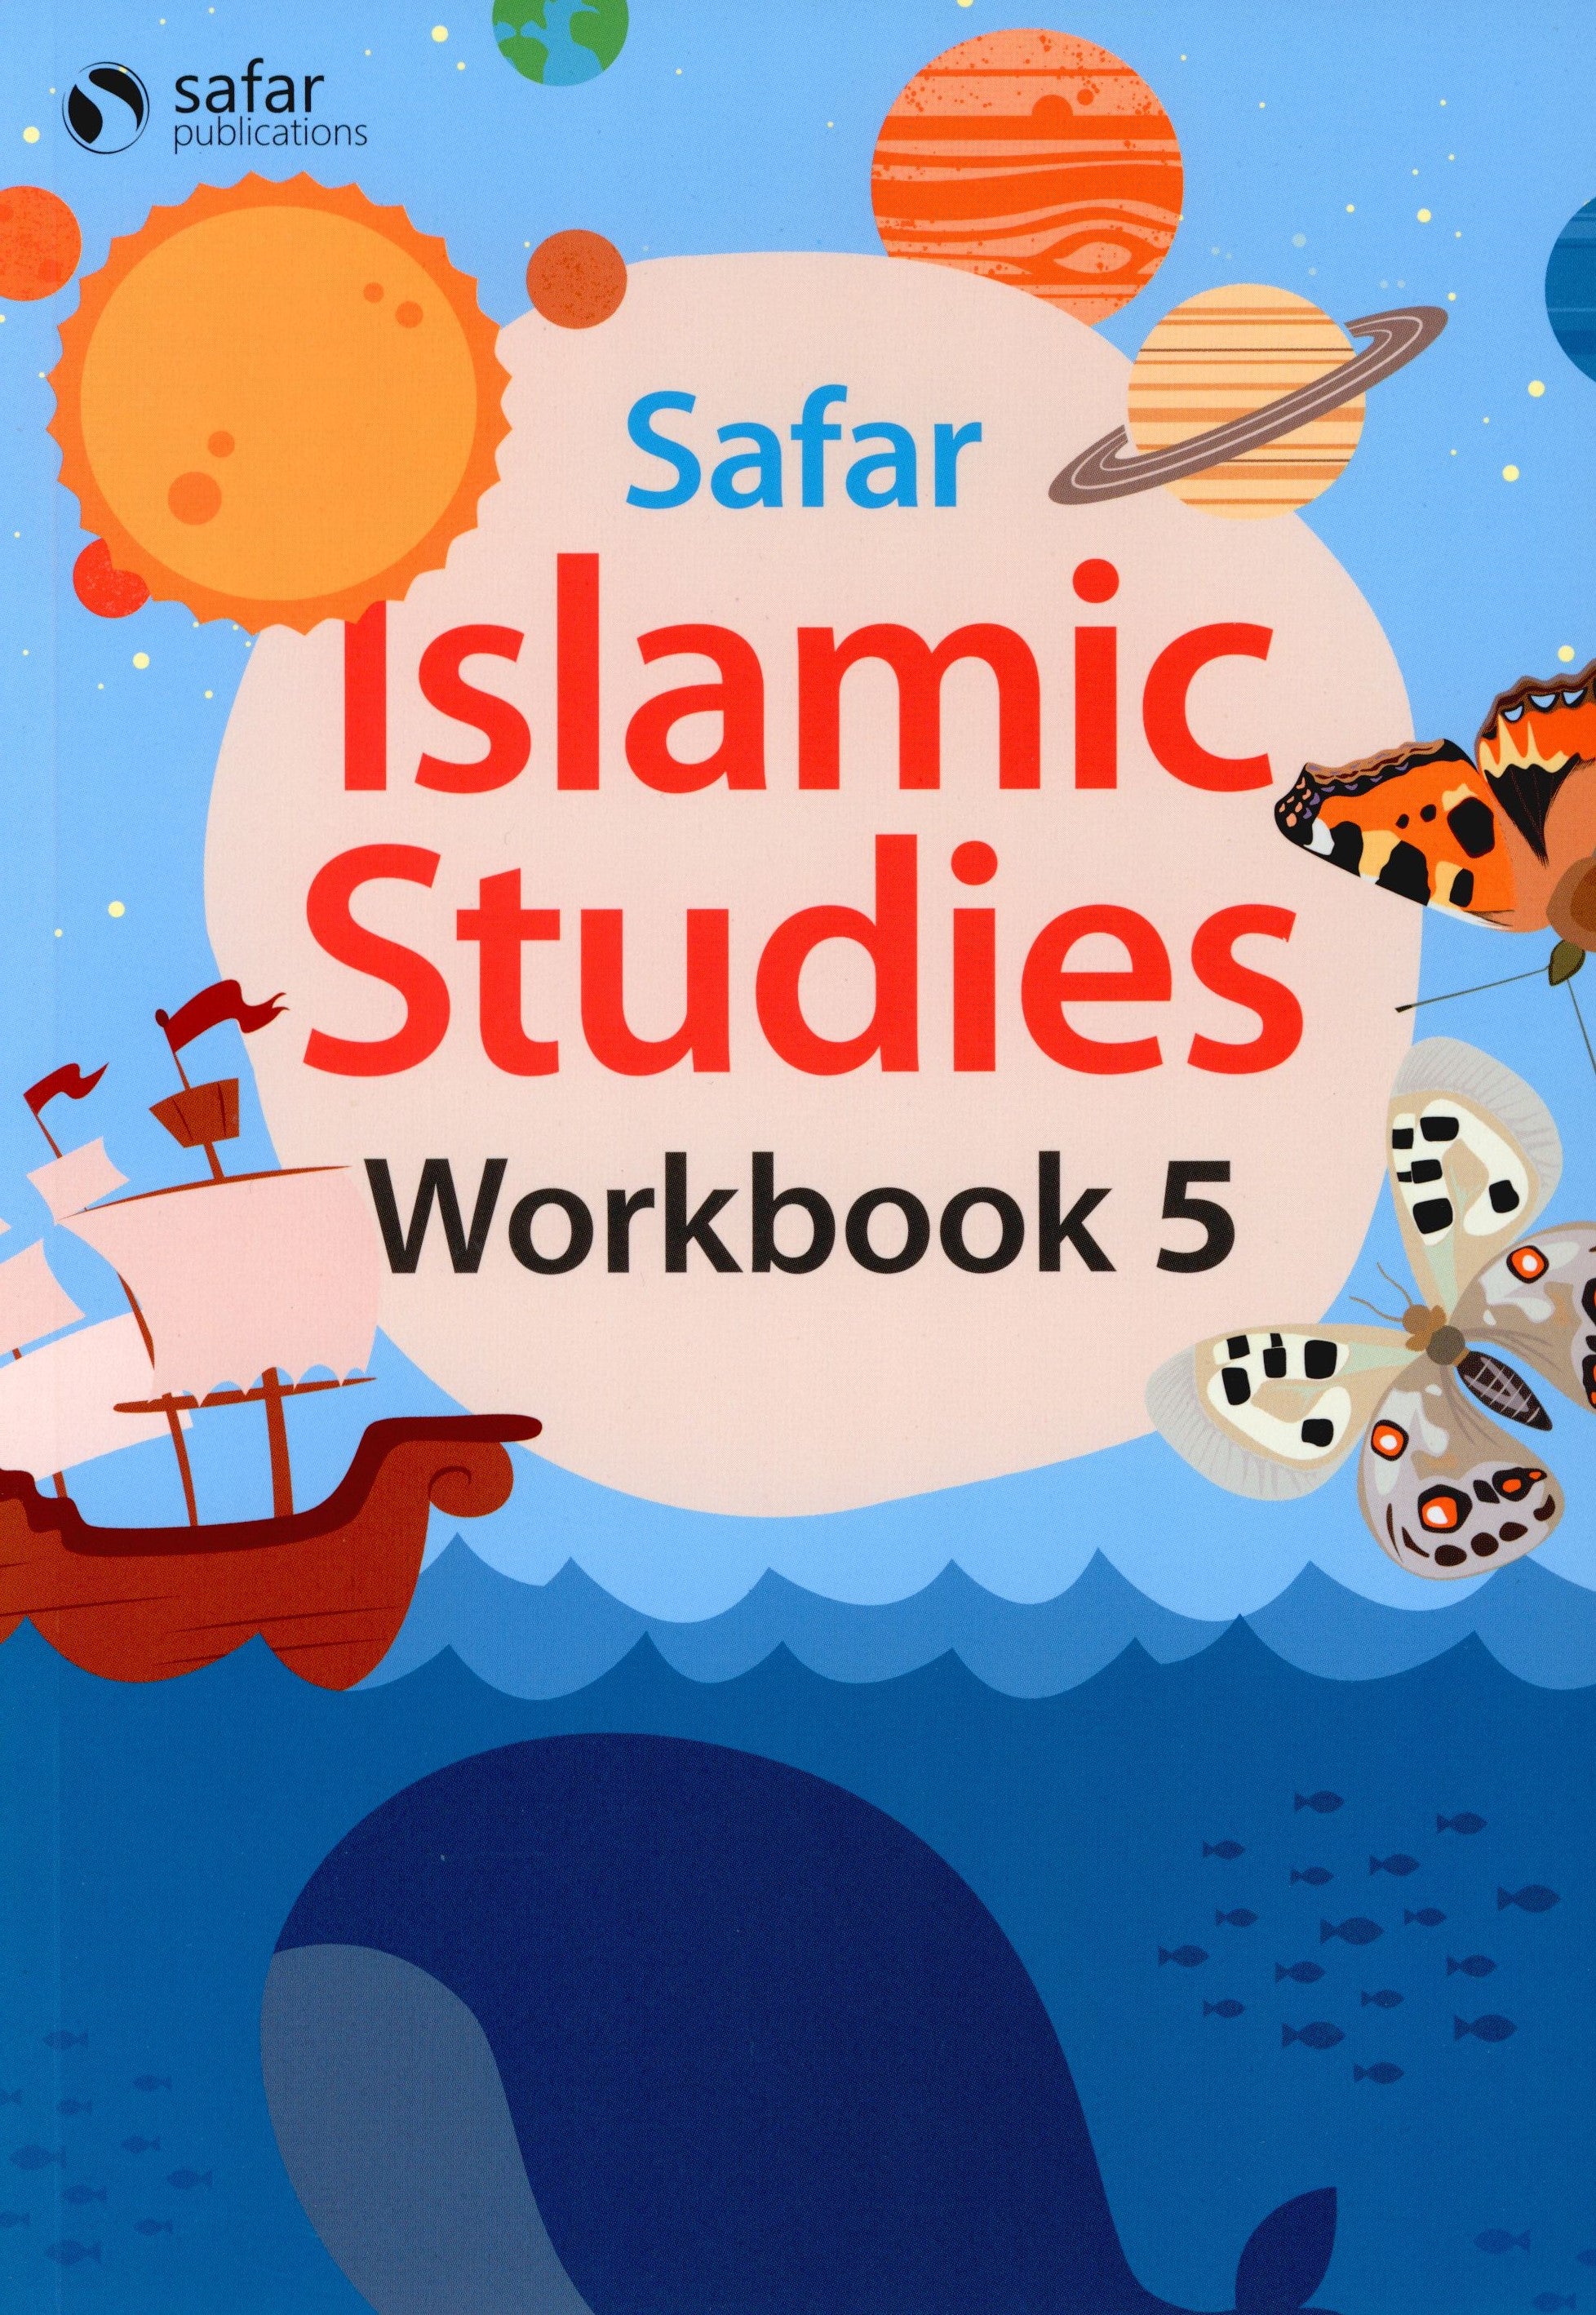 Safar Islamic Studies Workbook 5